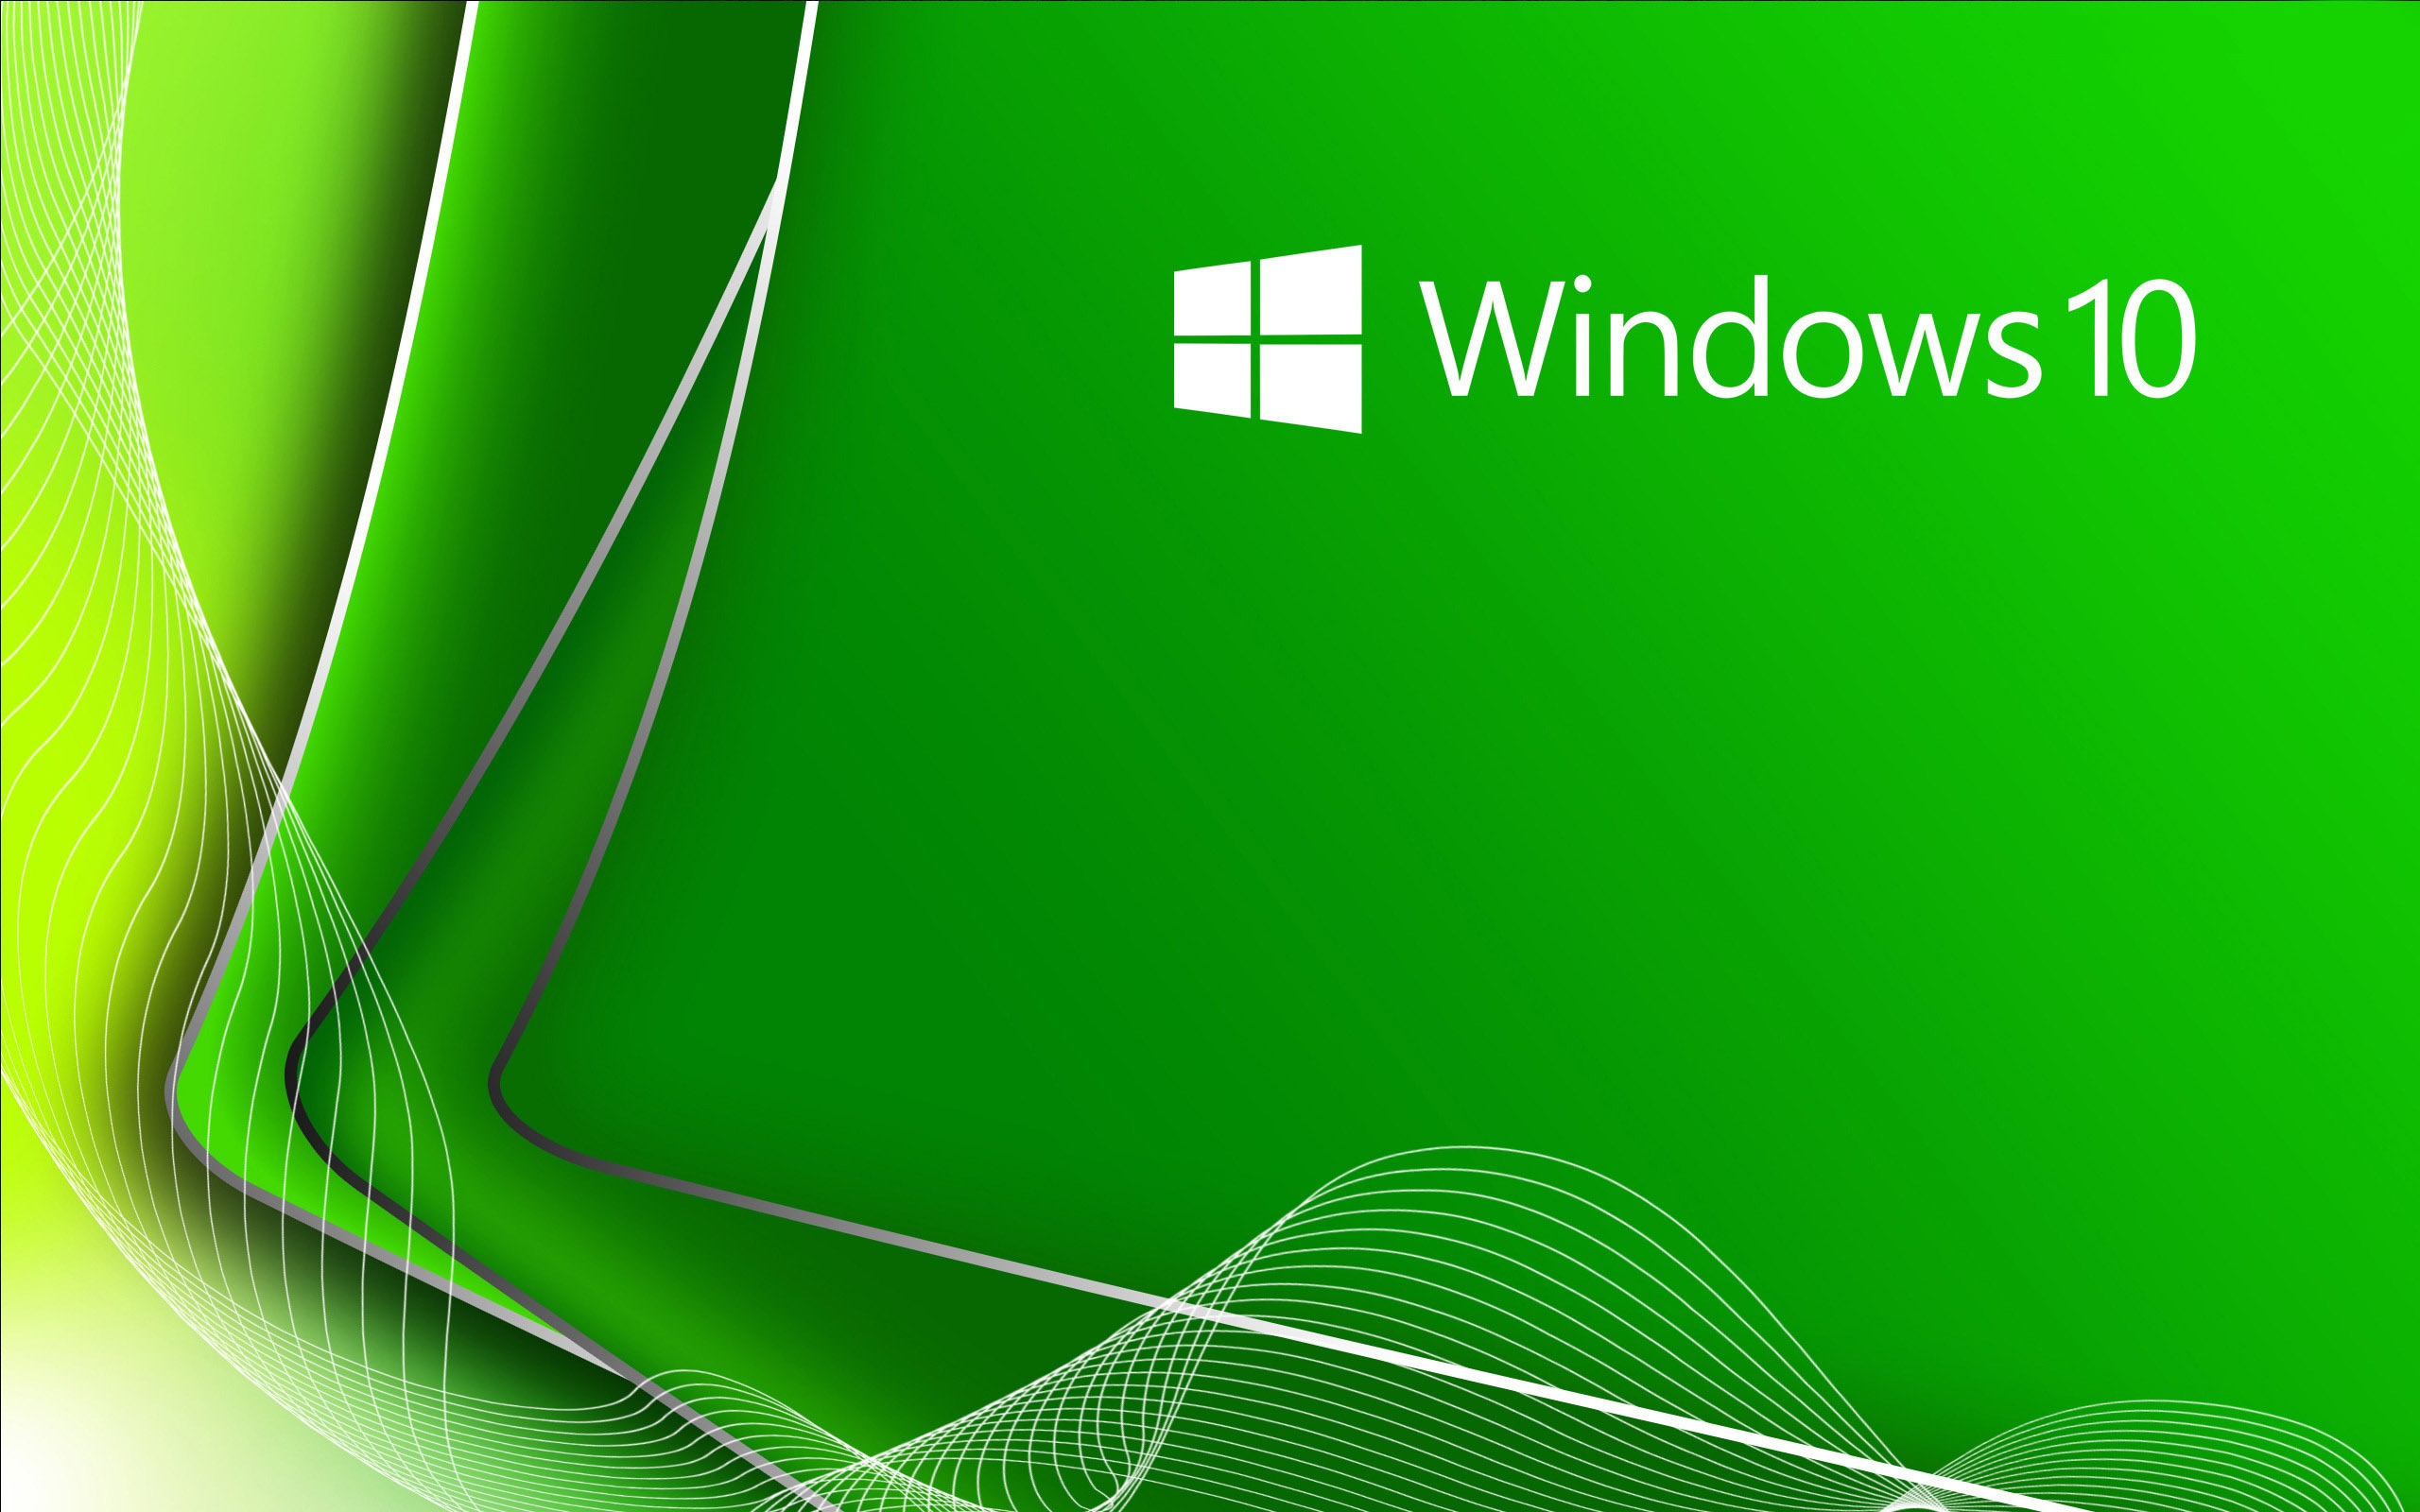 download windows 10 laptop free